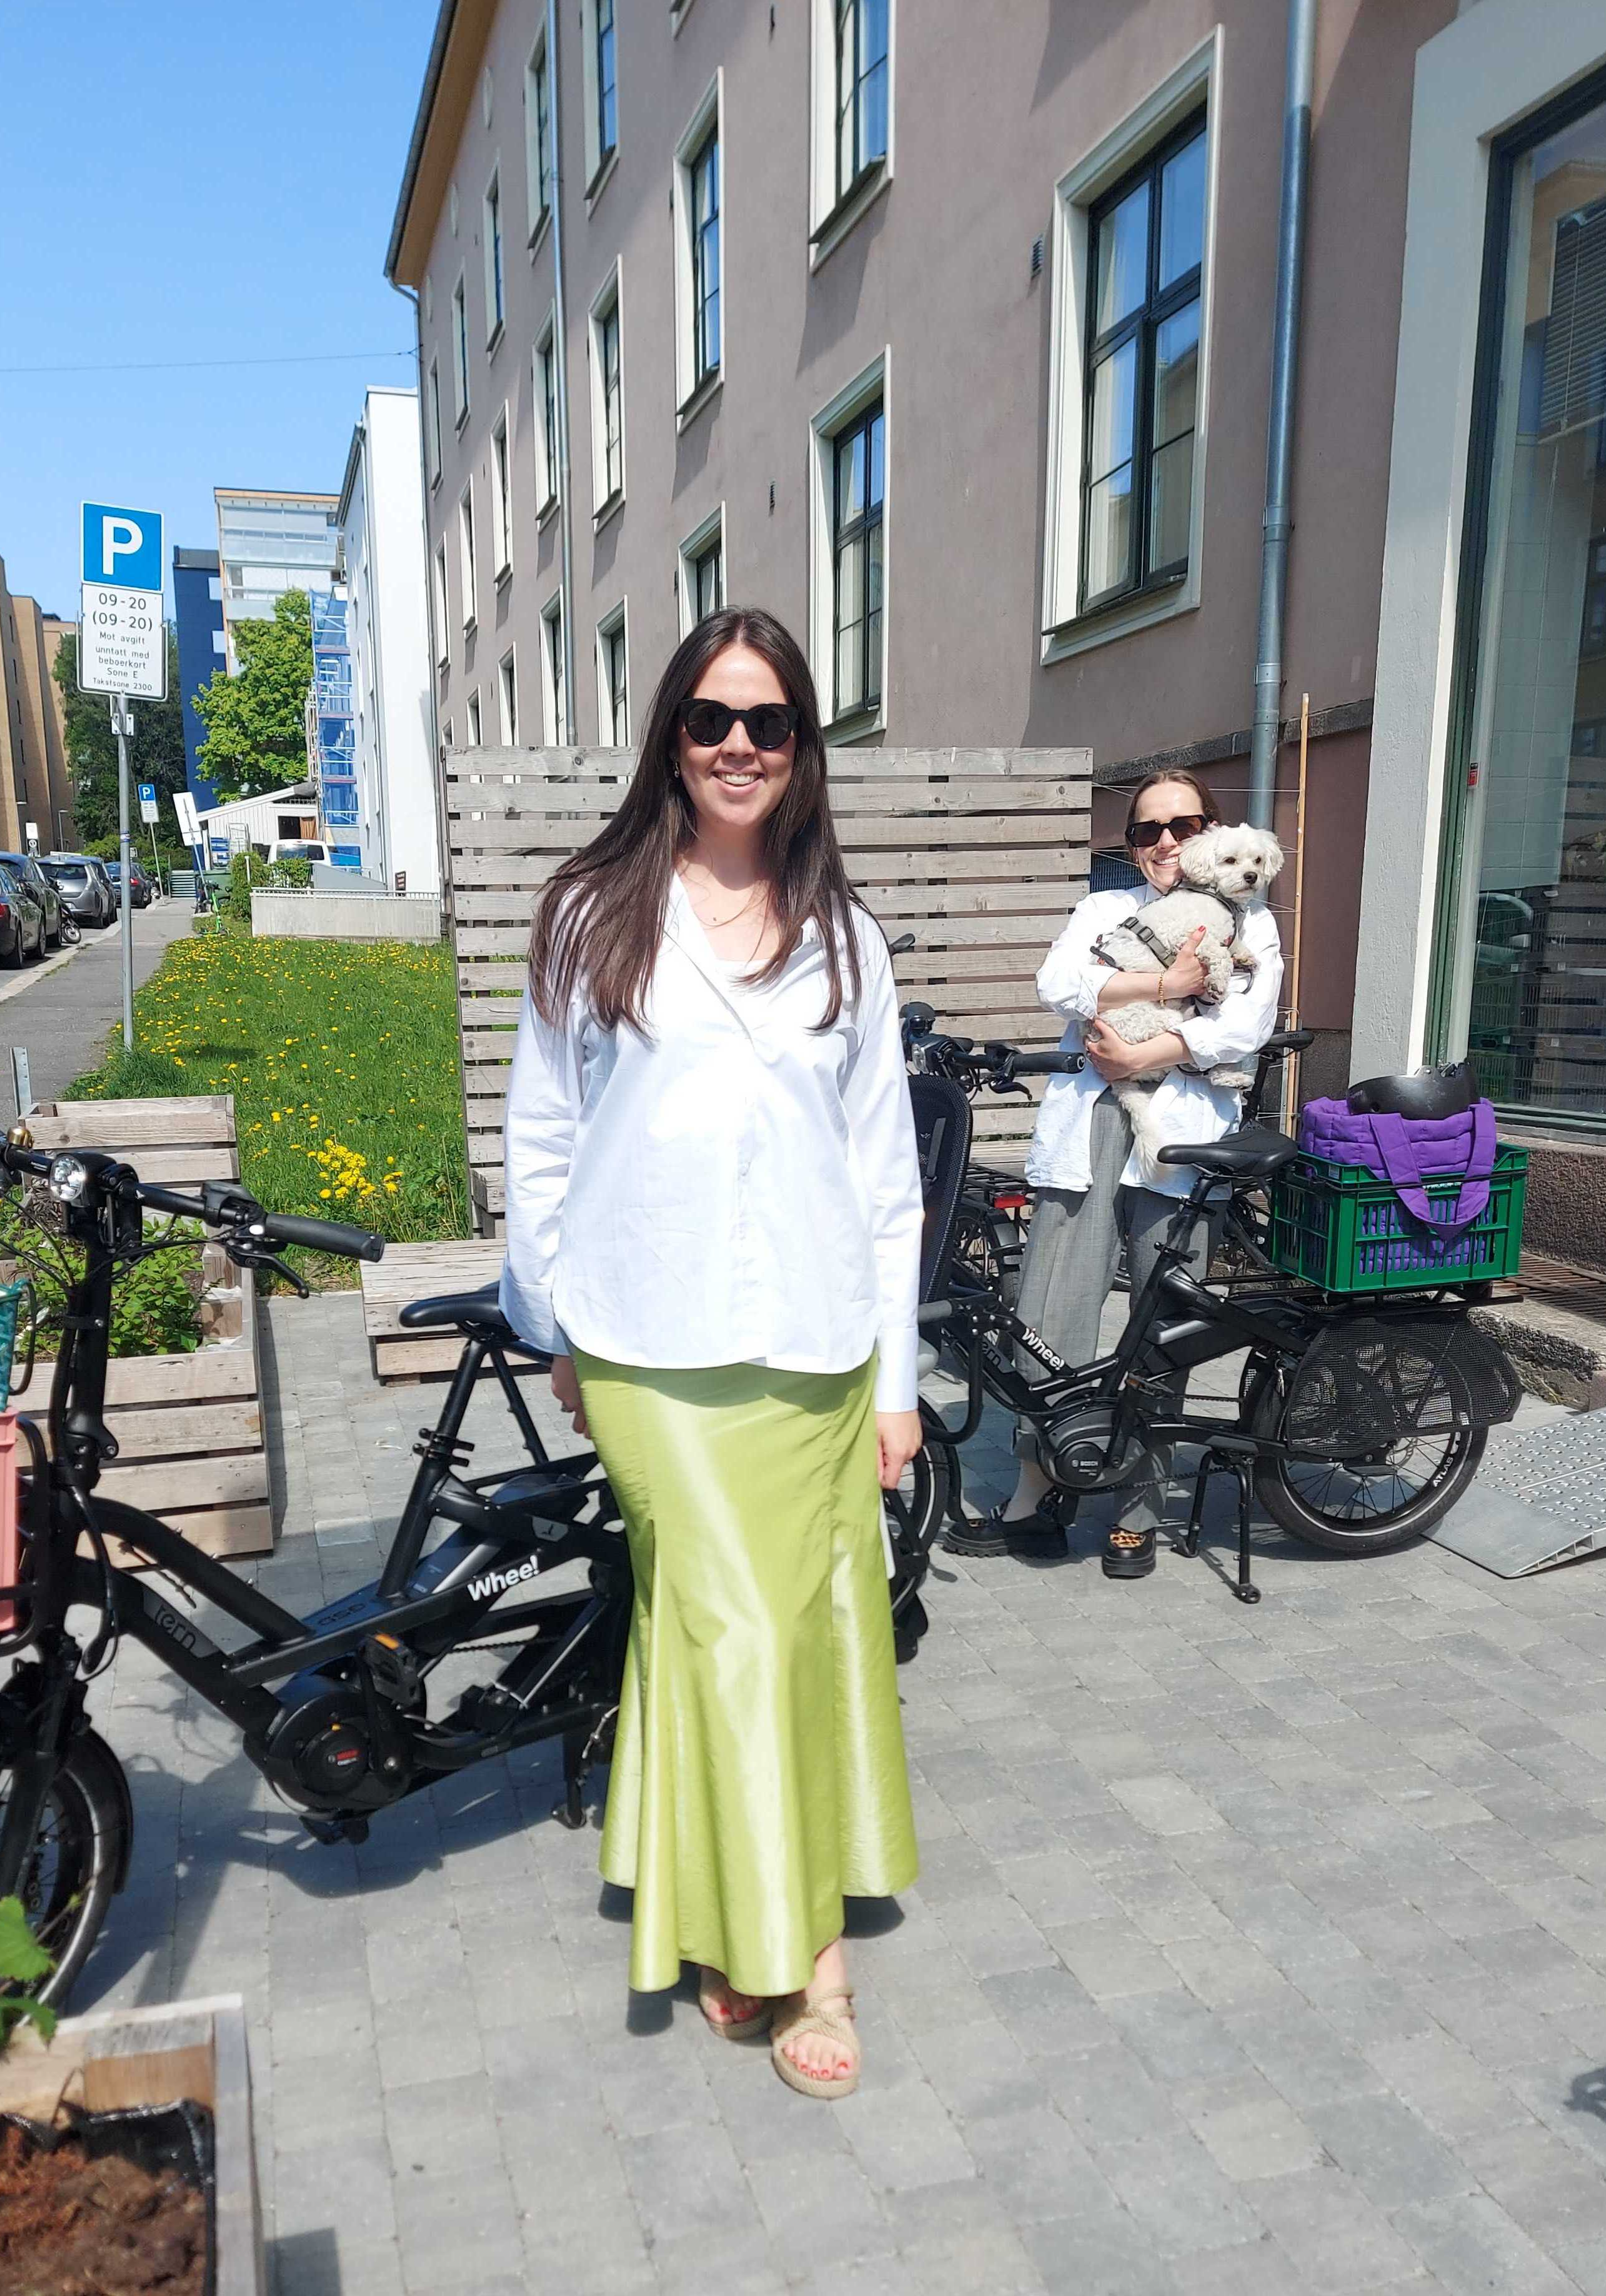 Karoline Kjønniksen og Ingrid Vik Lysne fra Fæbrik står utenfor Whee! Sandaker med sine nye Whee!-sykler